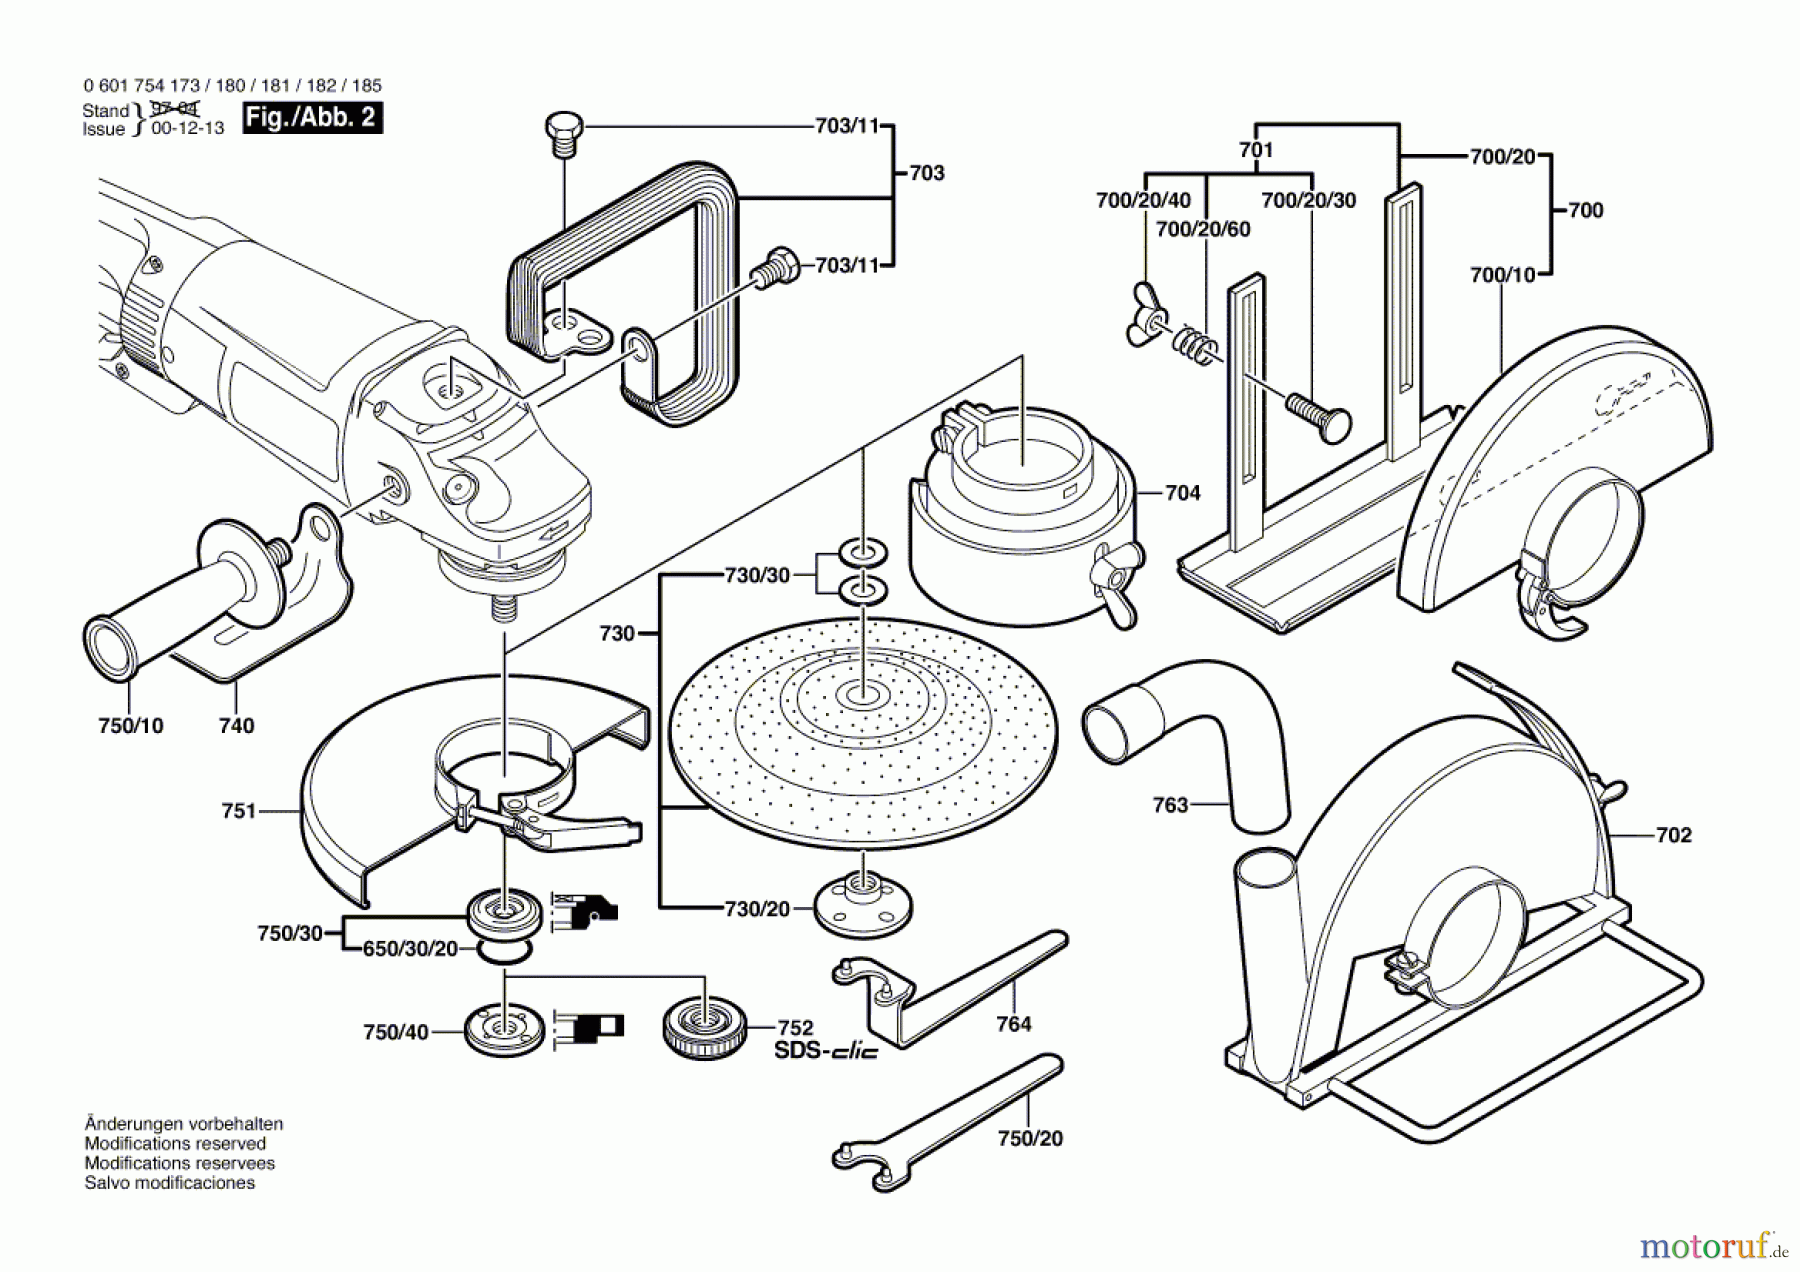  Bosch Werkzeug Winkelschleifer GWS 23-230 Seite 2